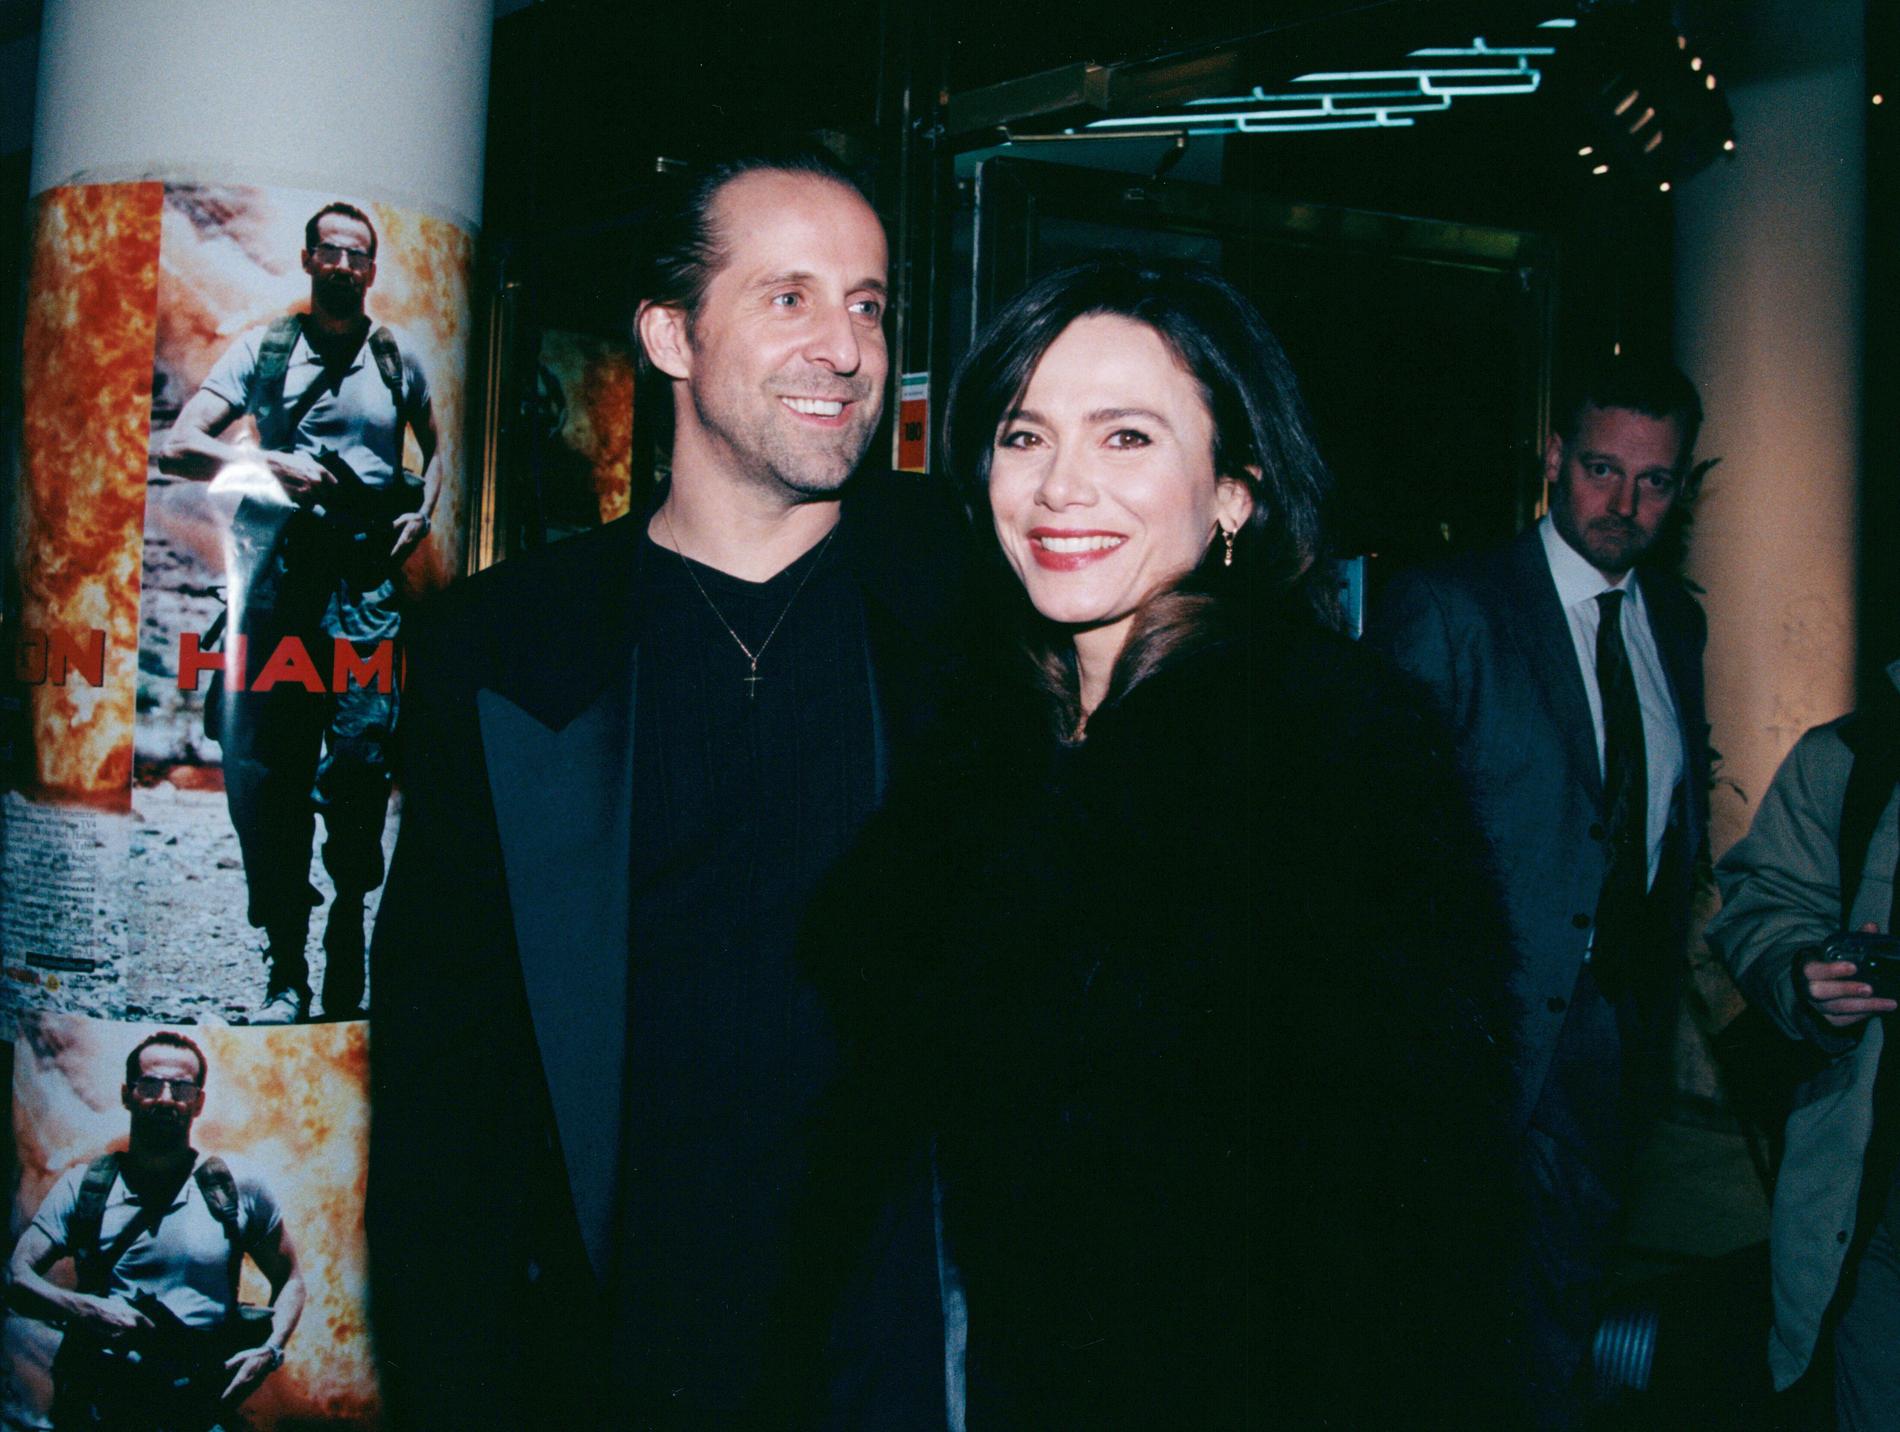  Peter Stormare och Lena Olin 1998.